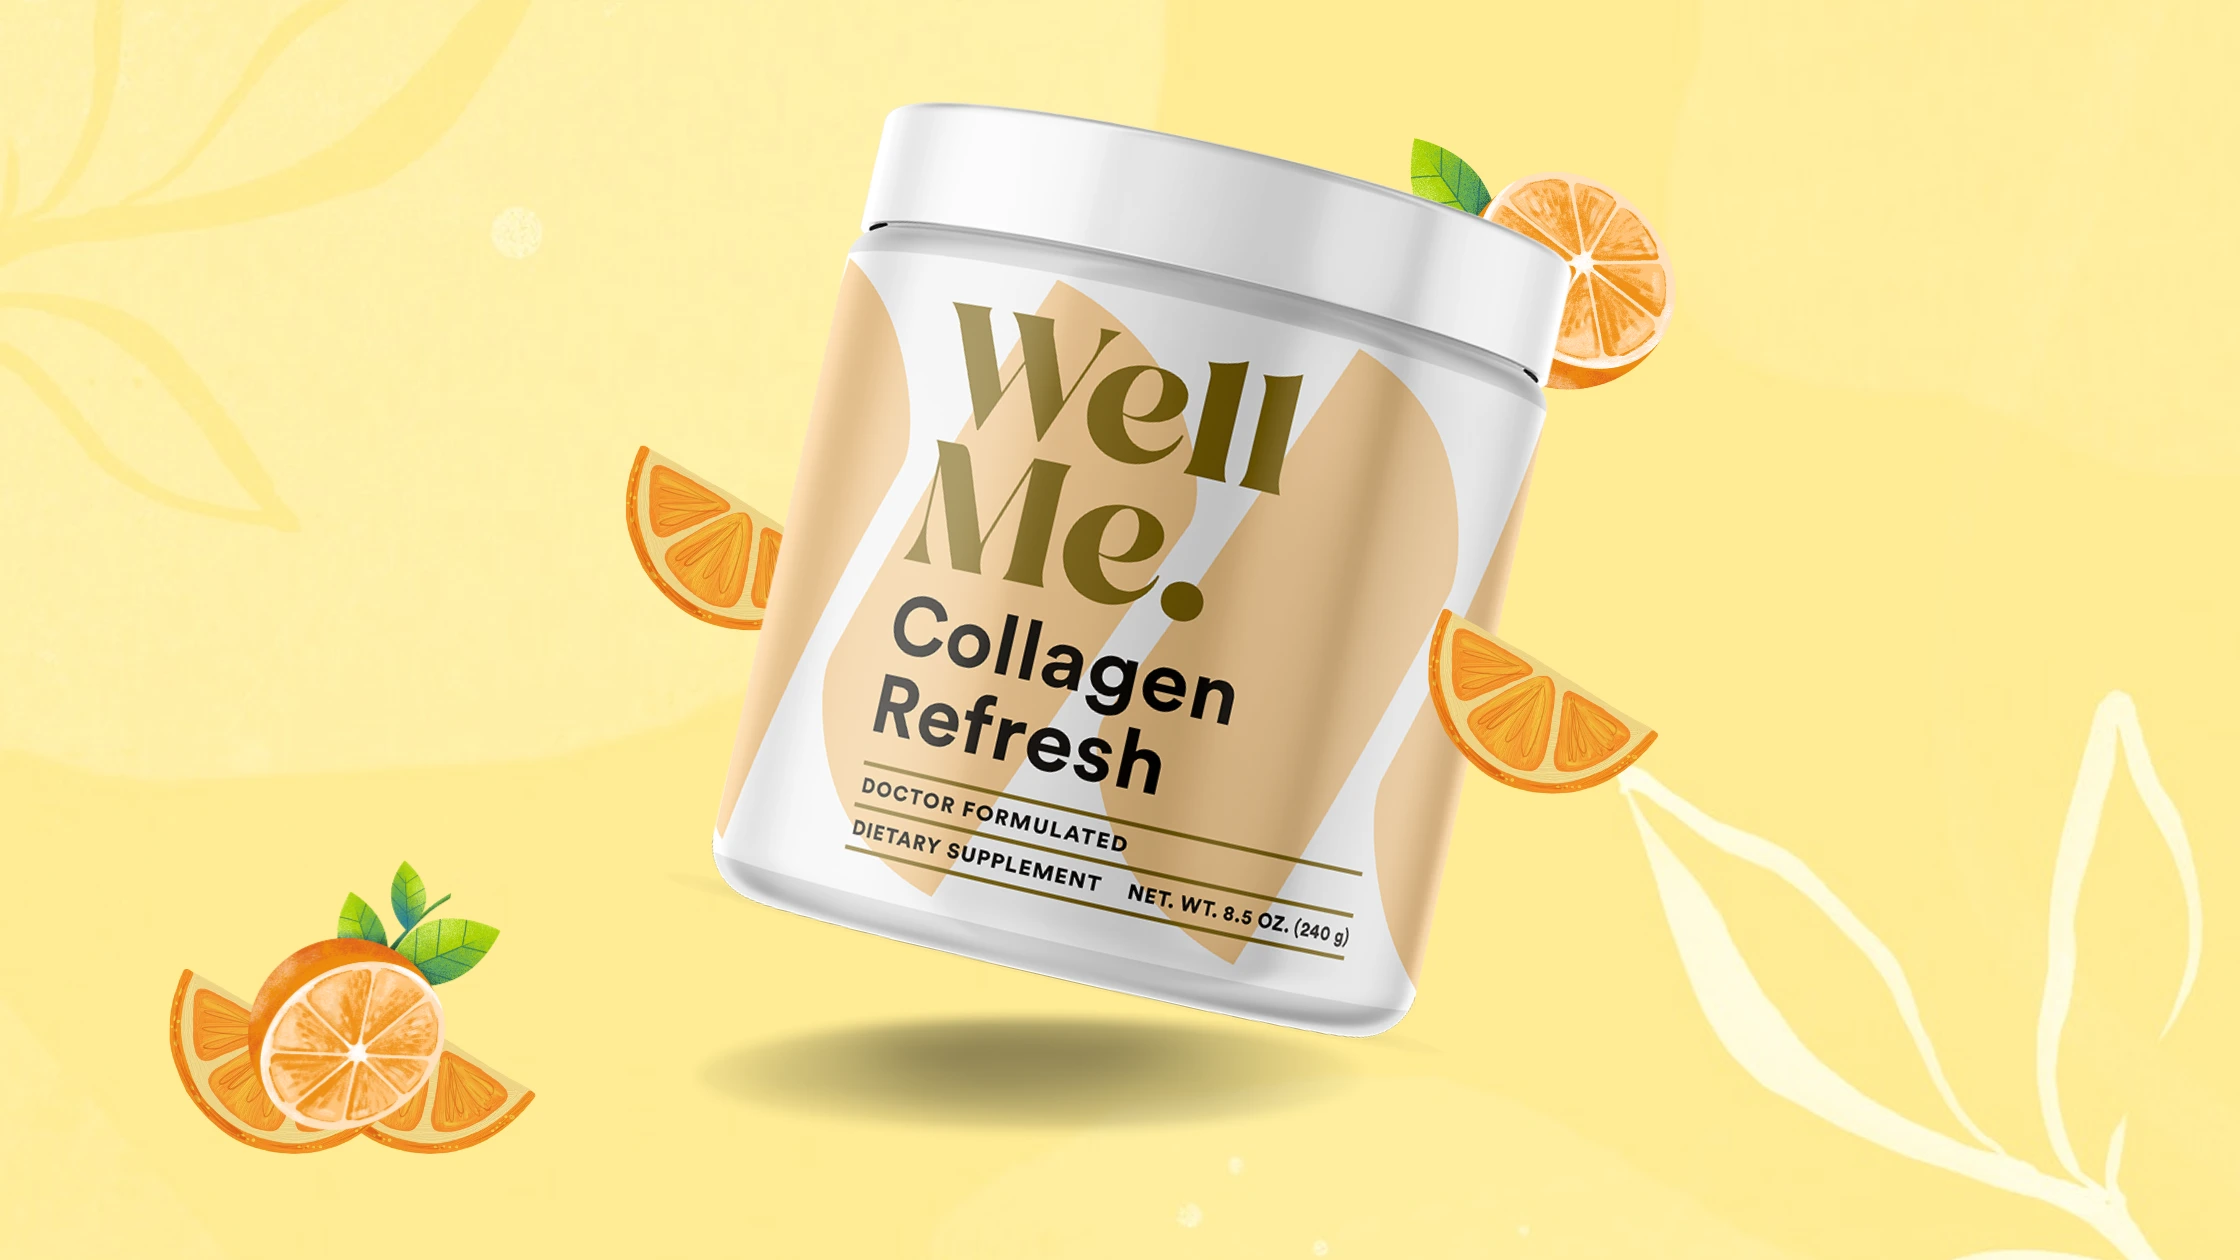 WellMe Collagen Refresh Reviews